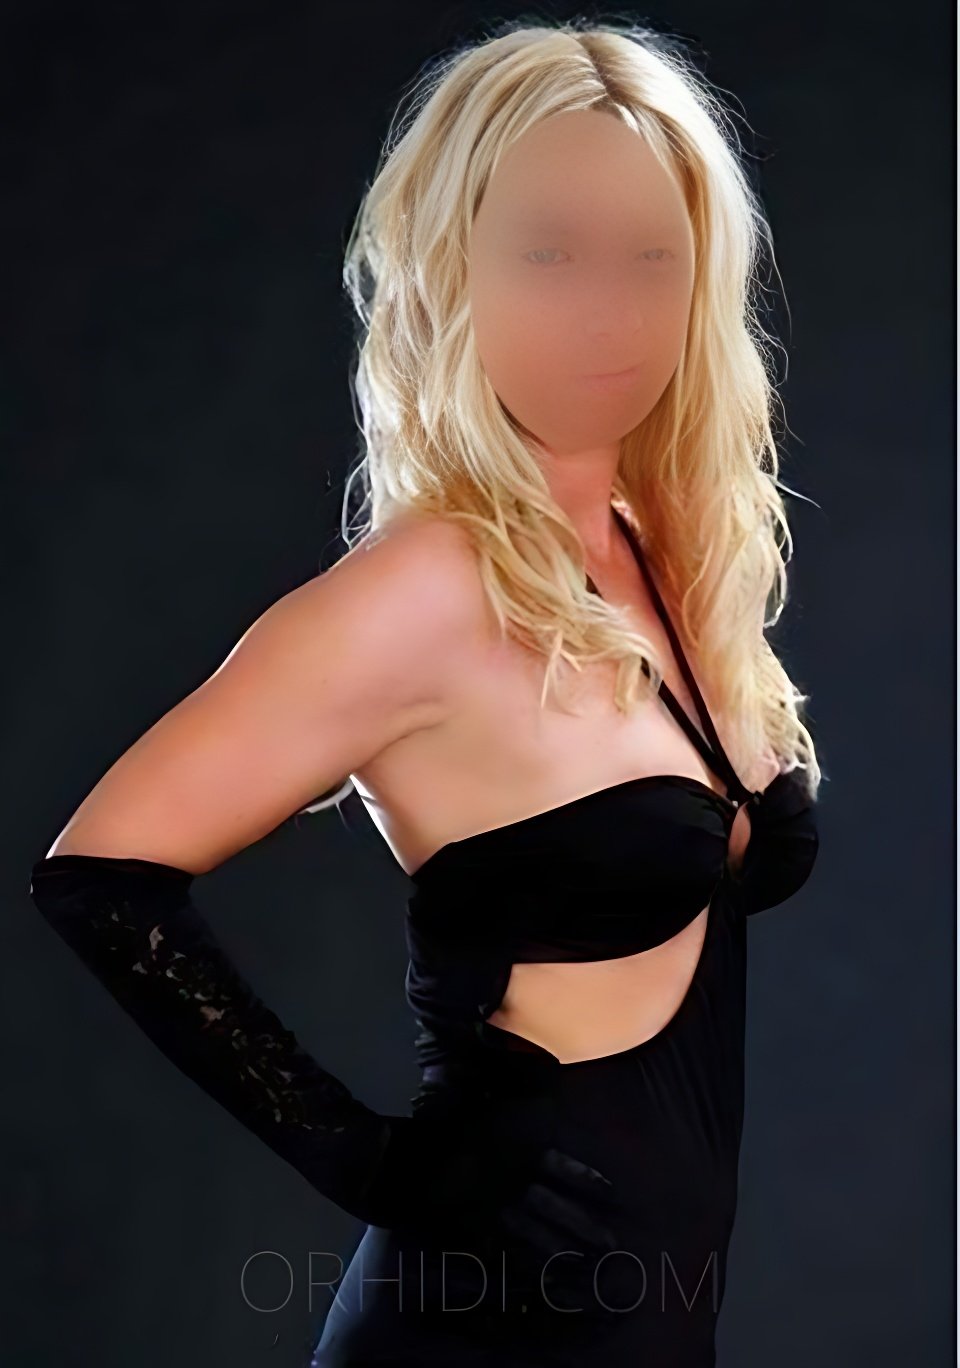 Treffen Sie Amazing Nicole (38) - Blonde Leidenschaft: Top Eskorte Frau - model preview photo 0 